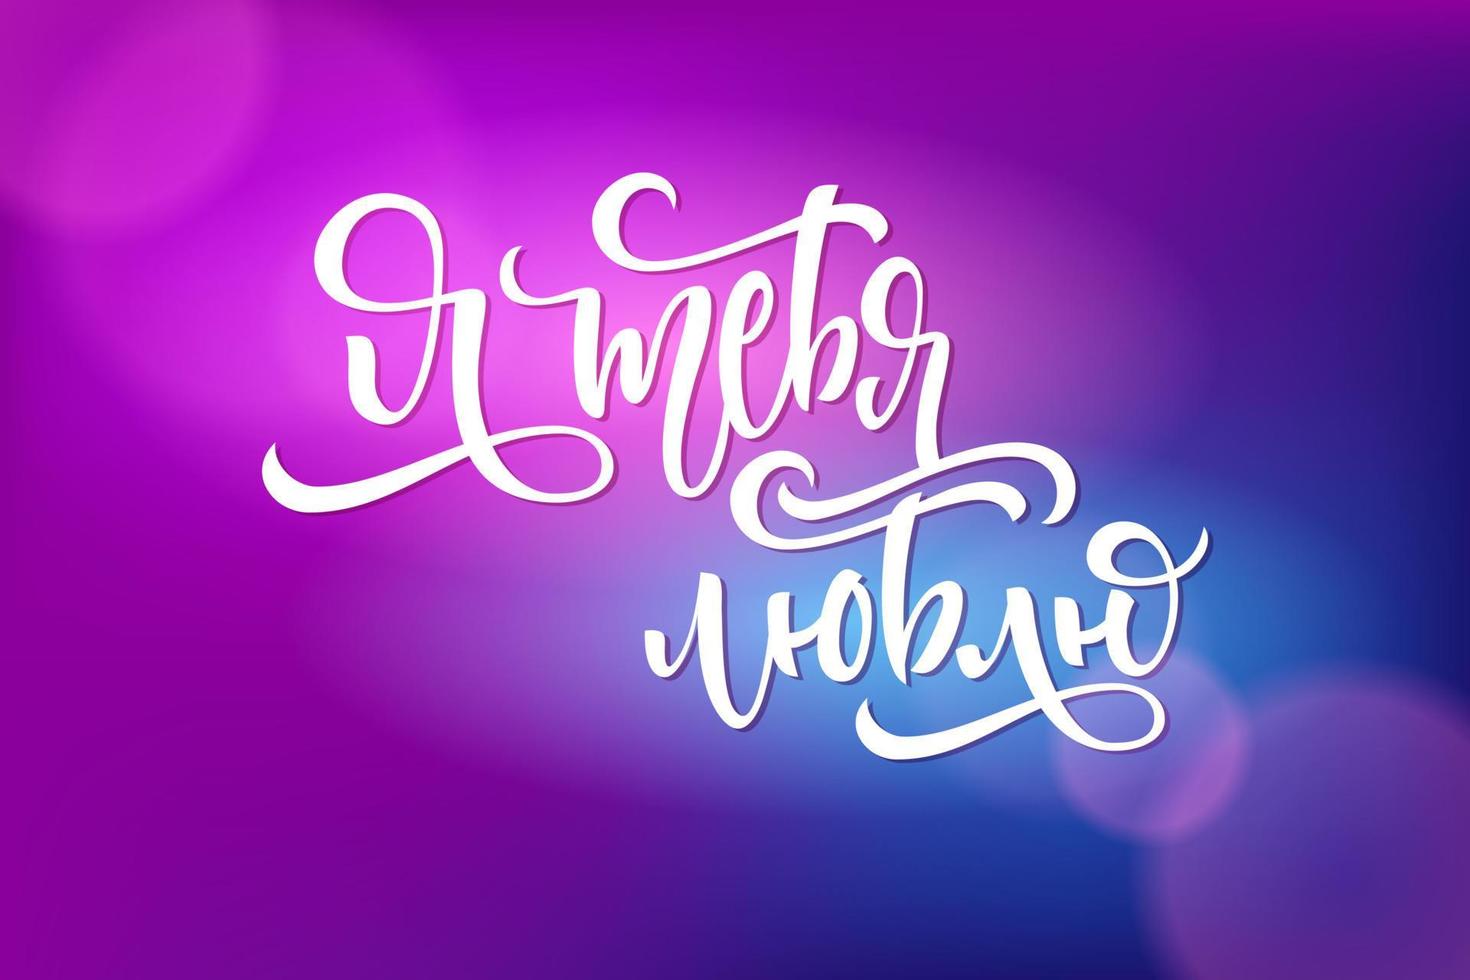 jag älskar dig bokstäver på ryska. kyrillisk kalligrafi på en mörk violett bakgrund för vykort, inbjudningar och banderoller. modern kyrillisk kalligrafi. vektor